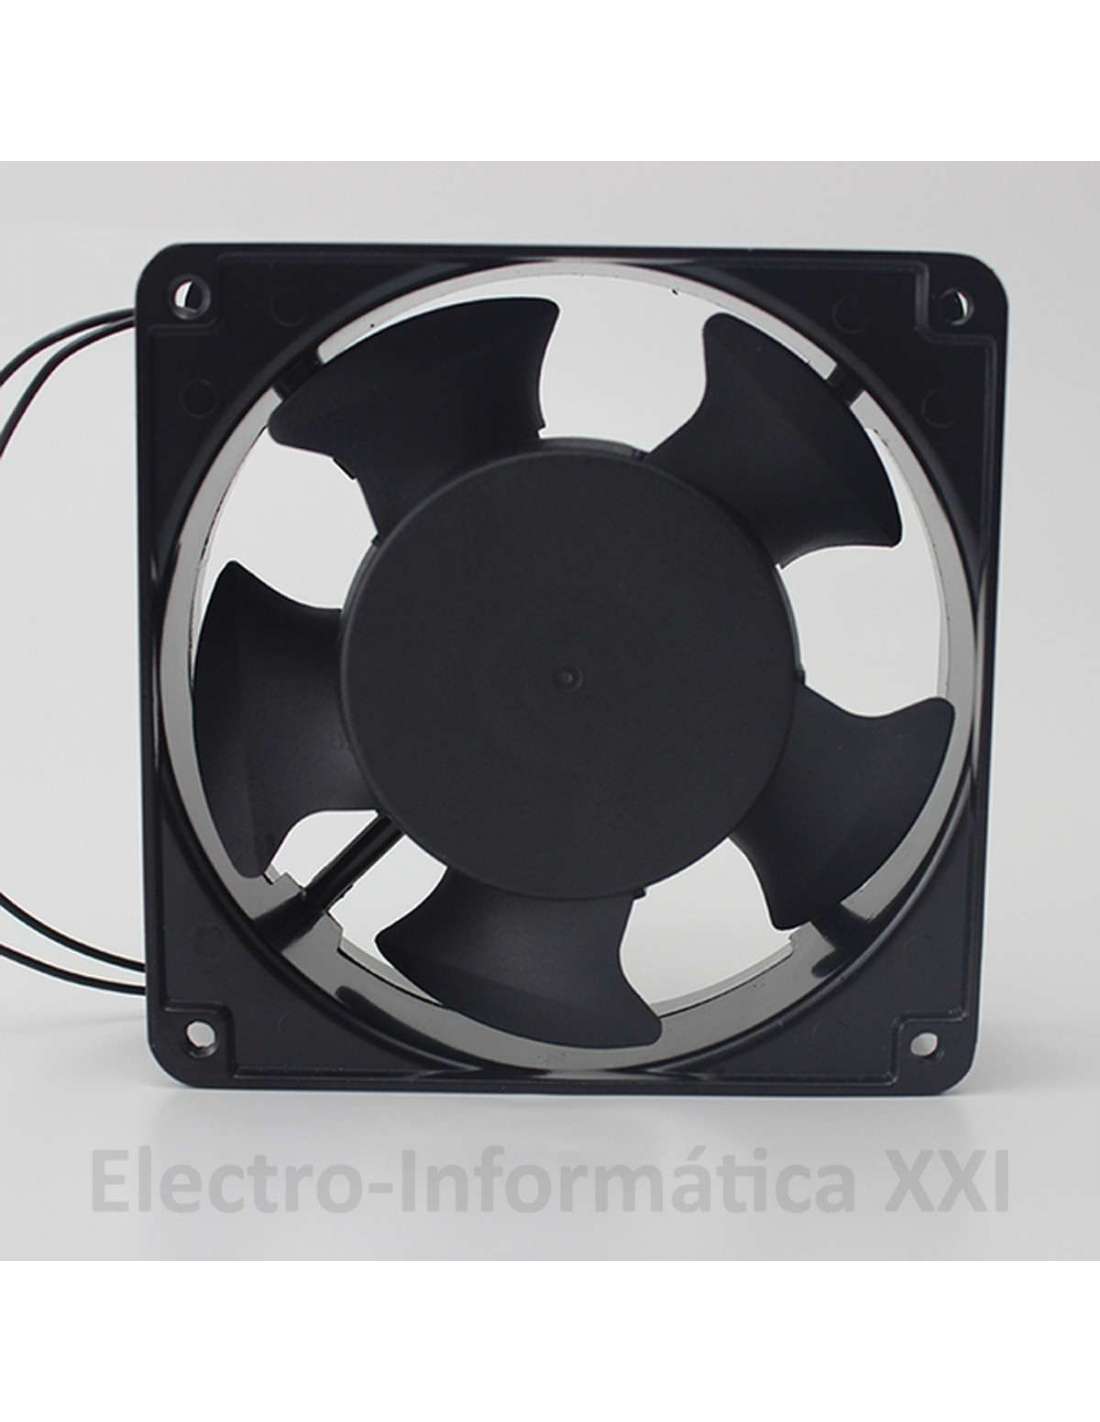 Ventilador para estufa de aluminio anodizado con un acabado en color negro  Vida XL 51238